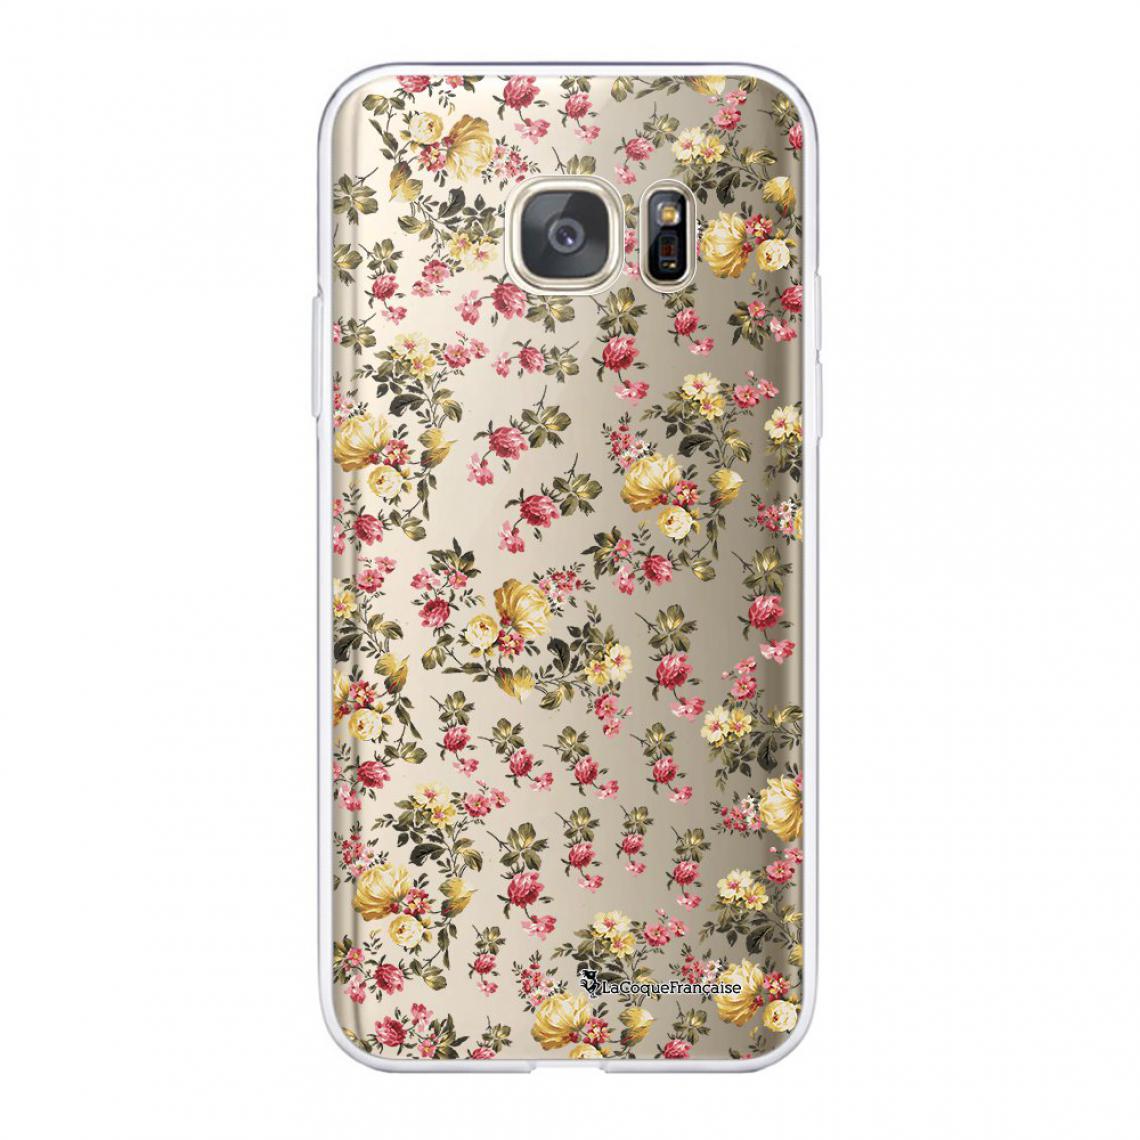 La Coque Francaise - Coque Samsung Galaxy S7 360 intégrale avant arrière transparente - Coque, étui smartphone